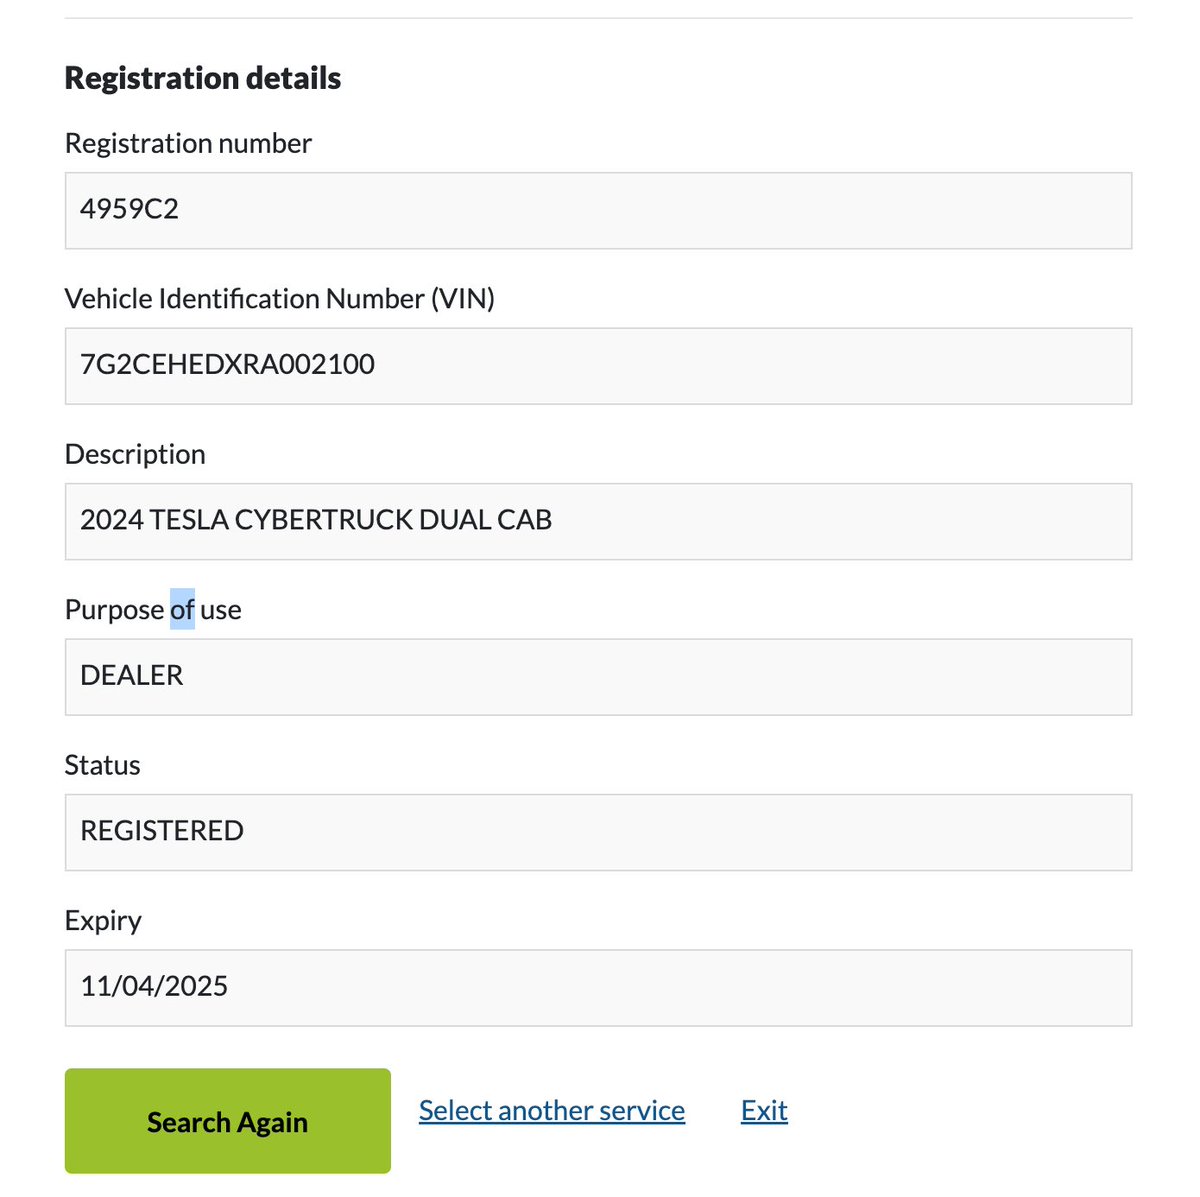 The cybertruck in Australia is registered to Queensland